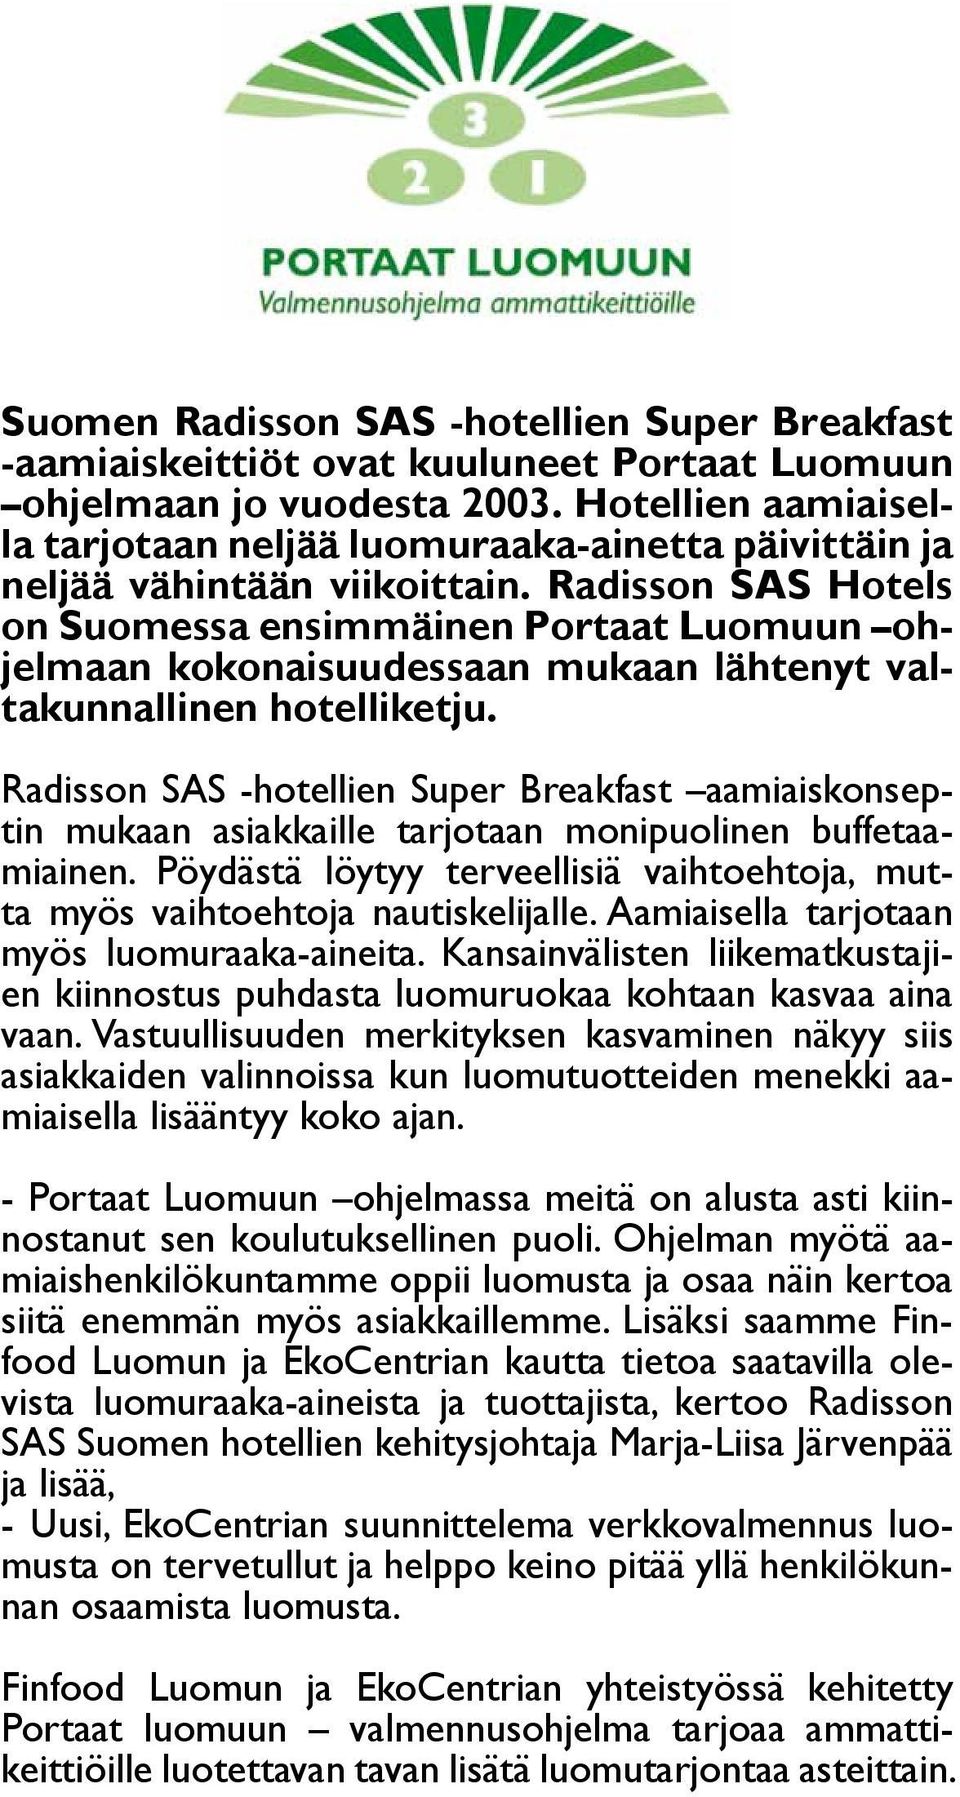 Radisson SAS Hotels on Suomessa ensimmäinen Portaat Luomuun ohjelmaan kokonaisuudessaan mukaan lähtenyt valtakunnallinen hotelliketju.